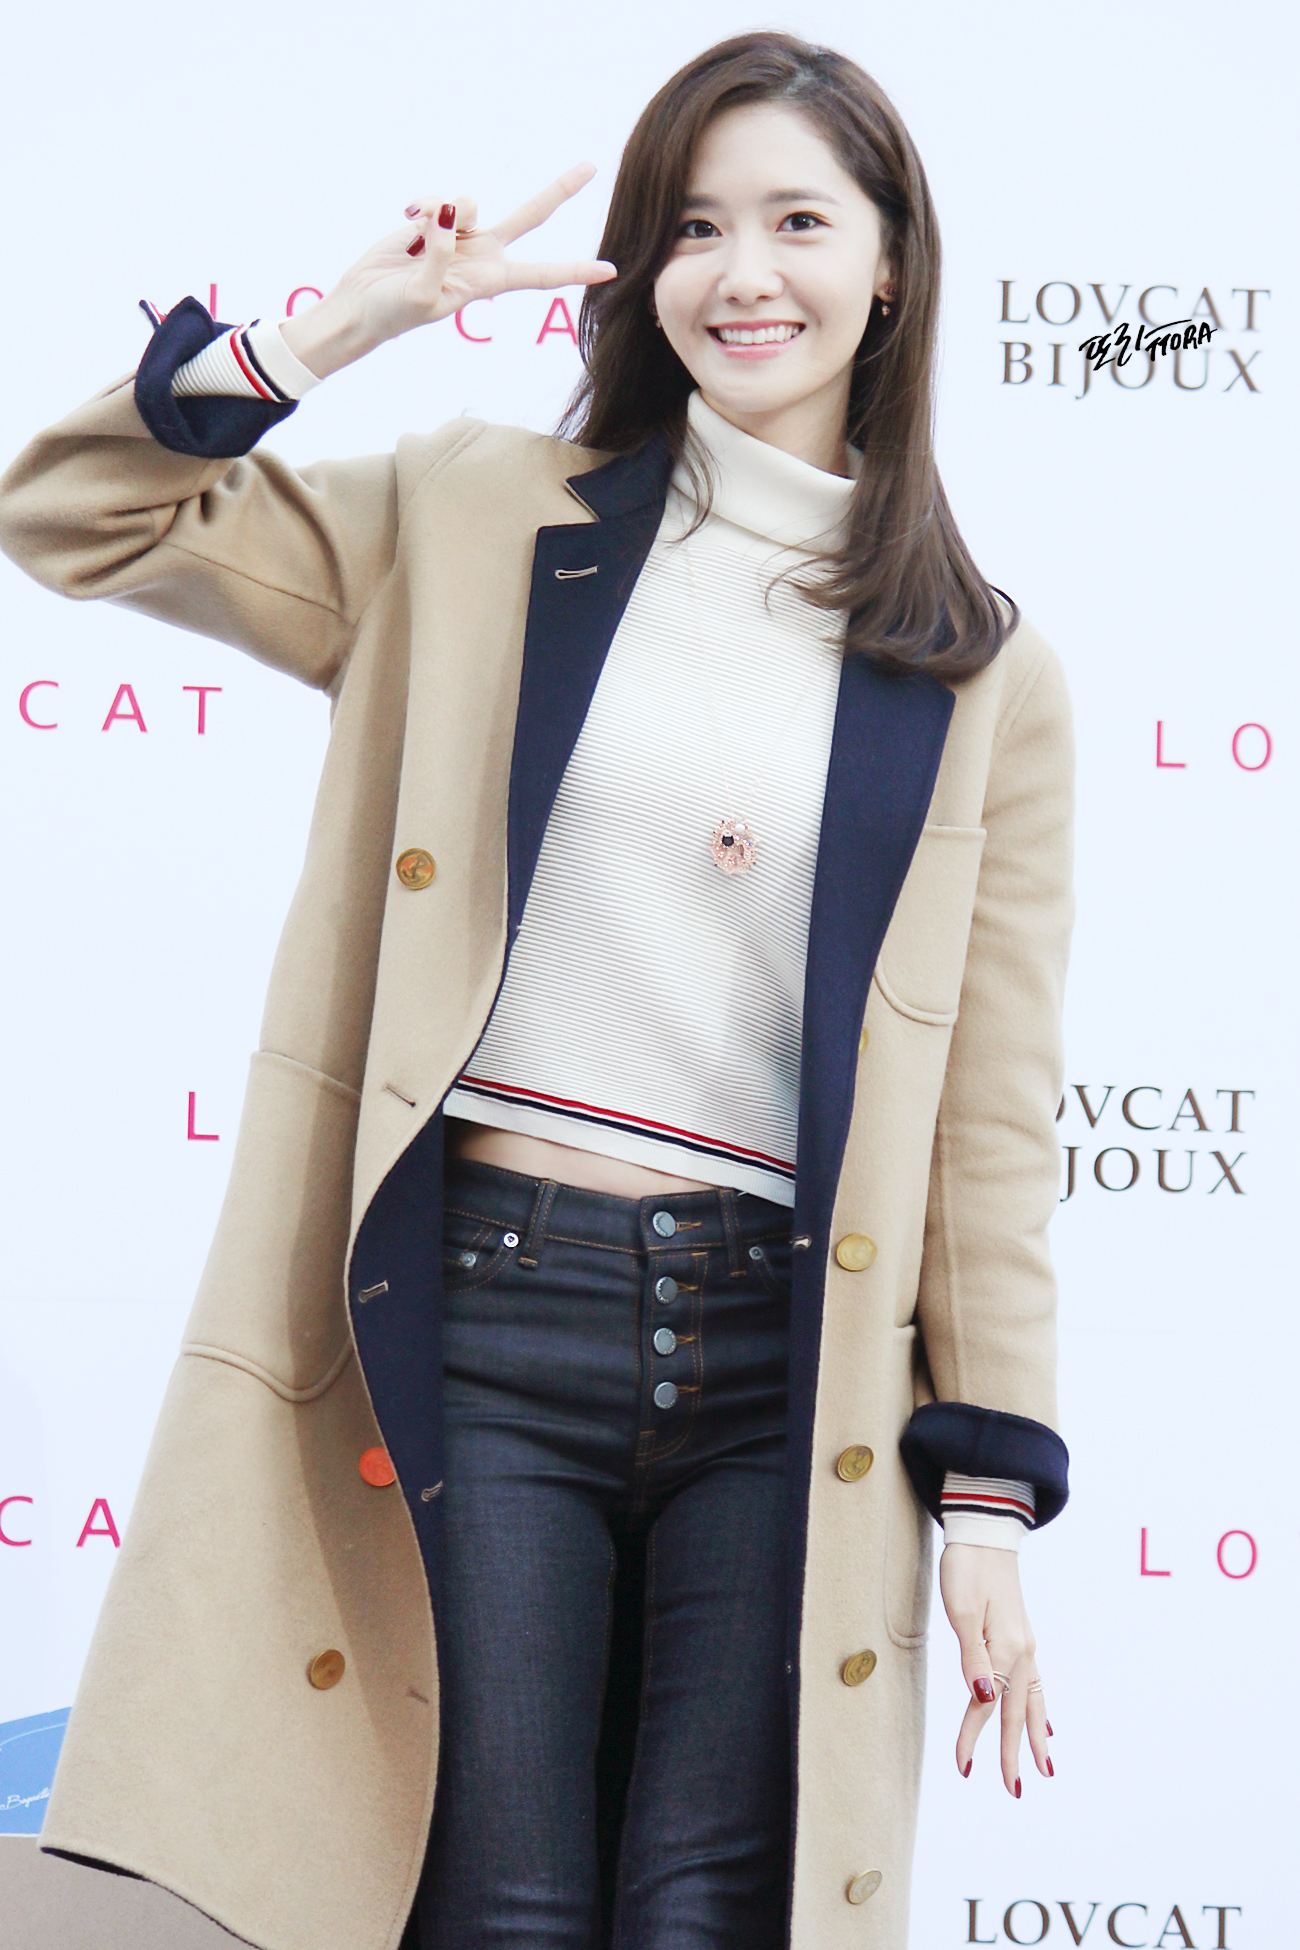 [PIC][24-10-2015]YoonA tham dự buổi fansign cho thương hiệu "LOVCAT" vào chiều nay - Page 3 245EED35562CDCC50A6B57